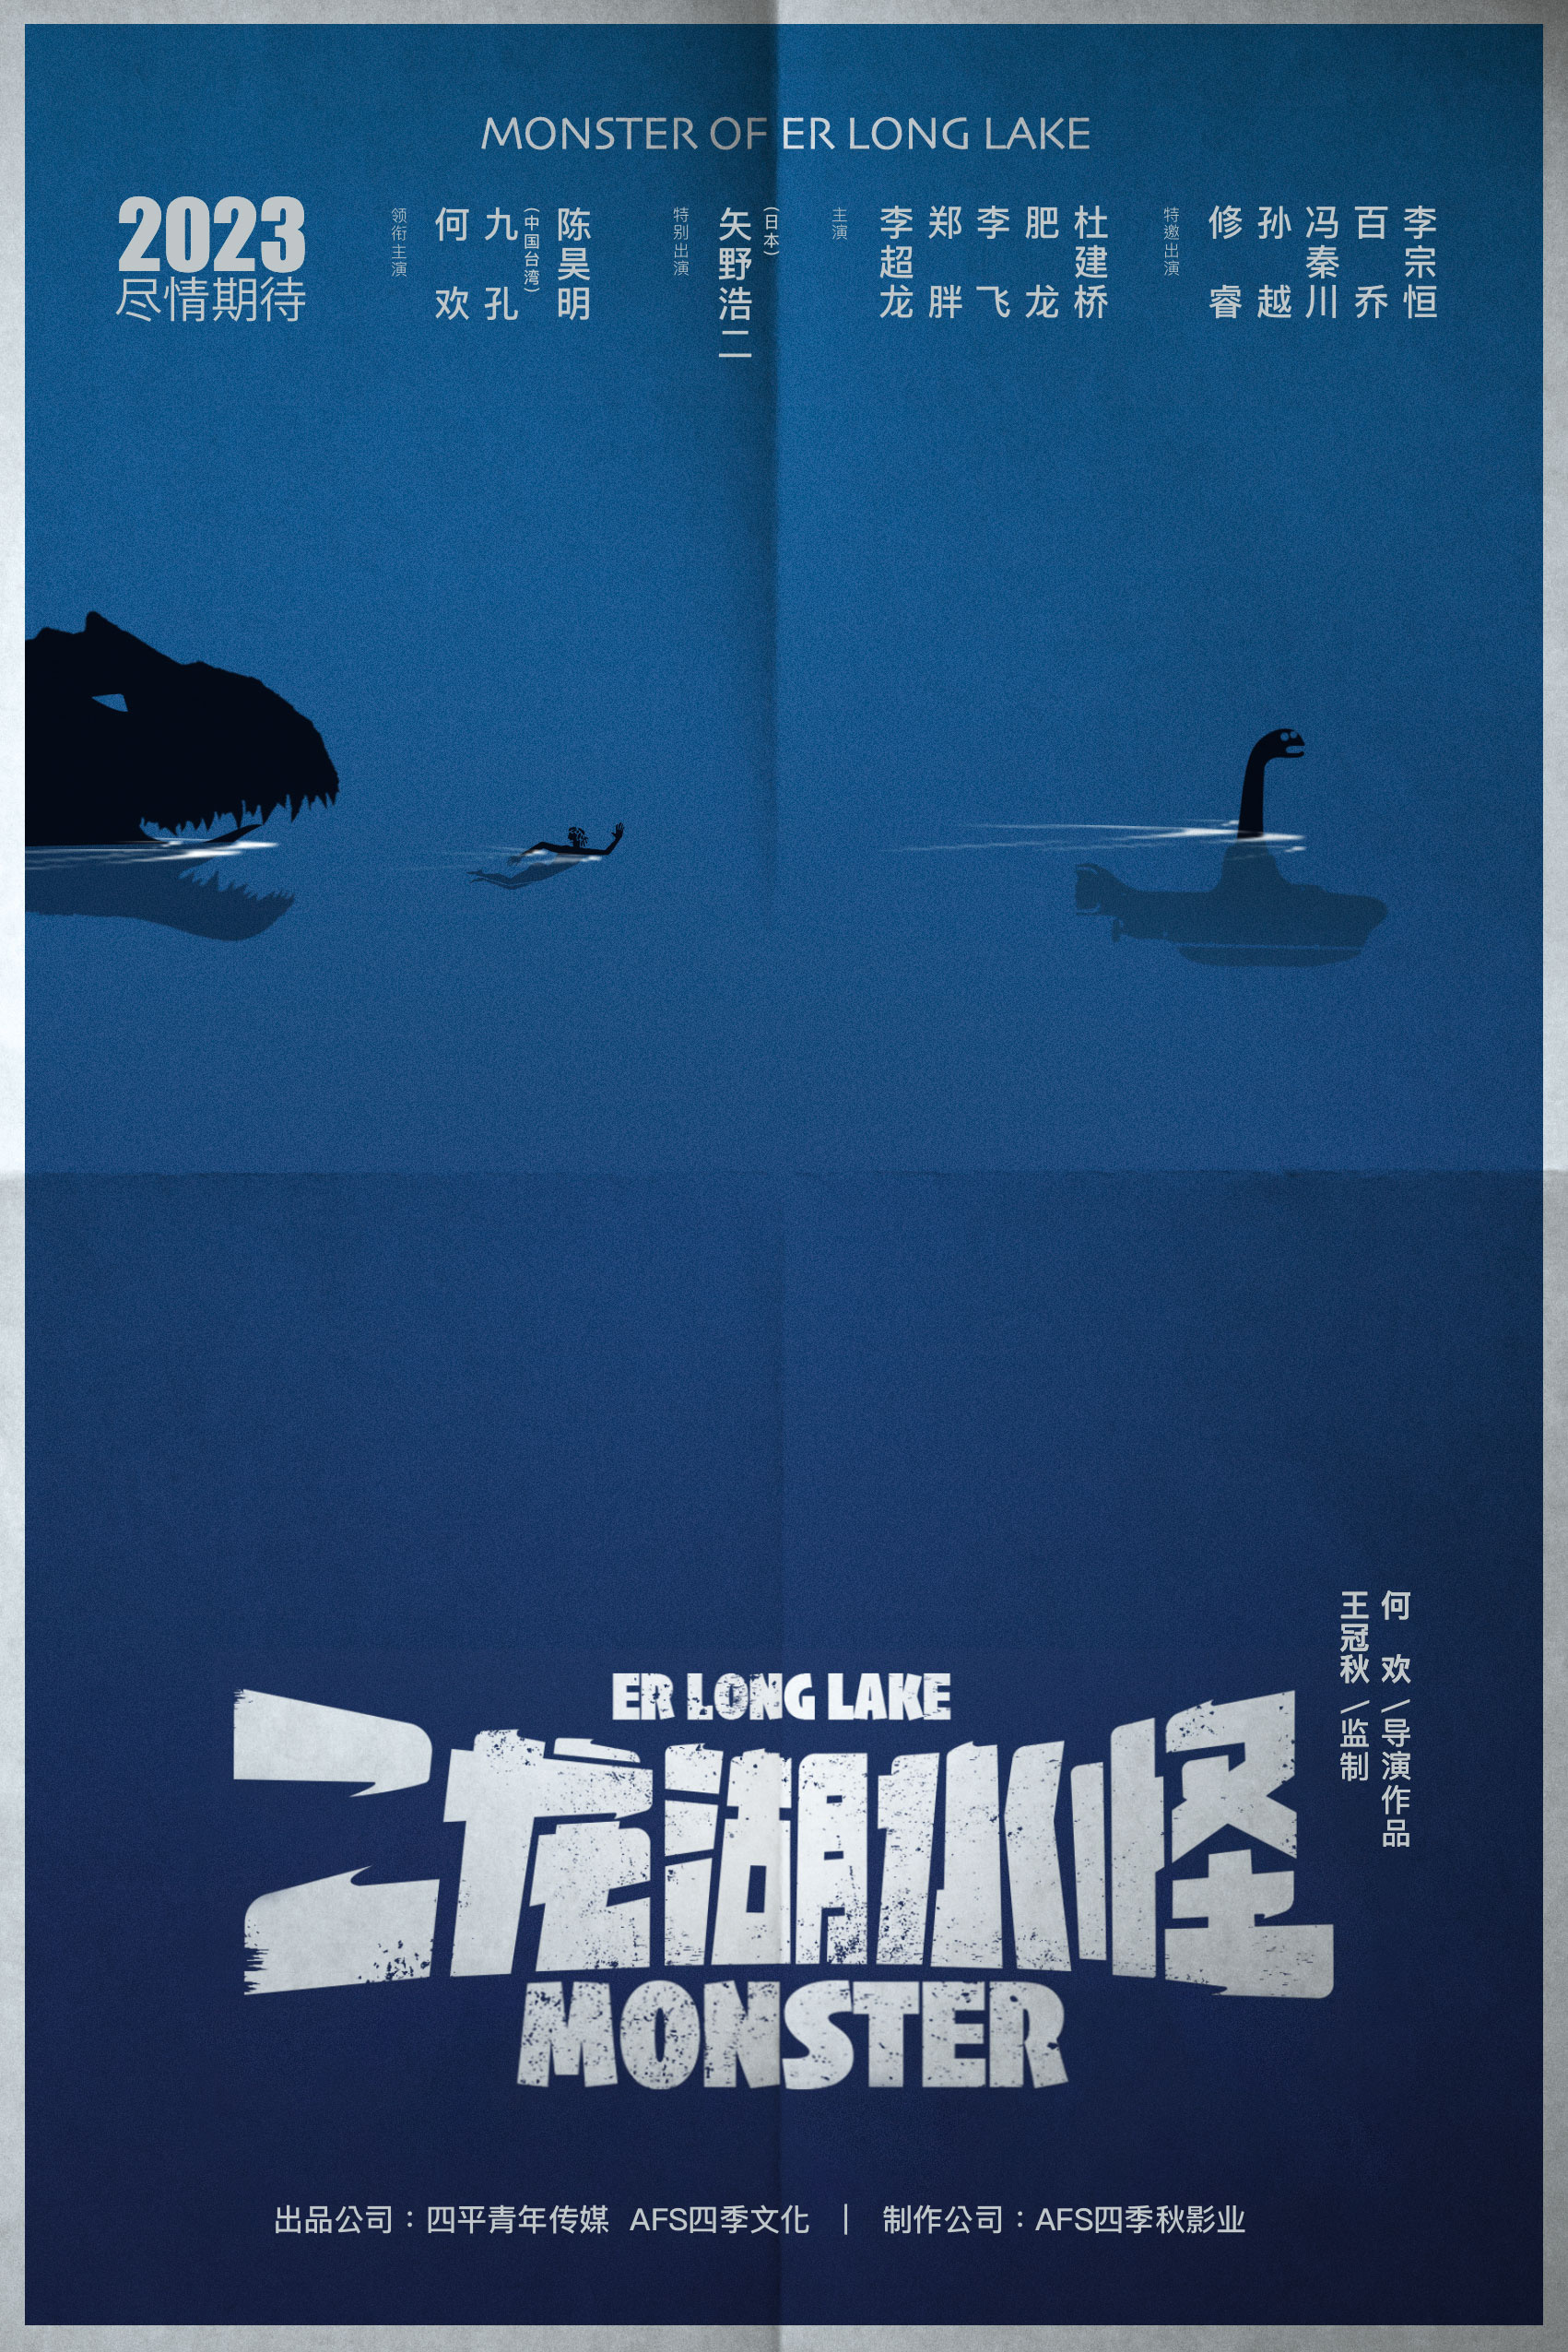 《二龙湖水怪》开机发布概念海报 九孔陈昊明主演